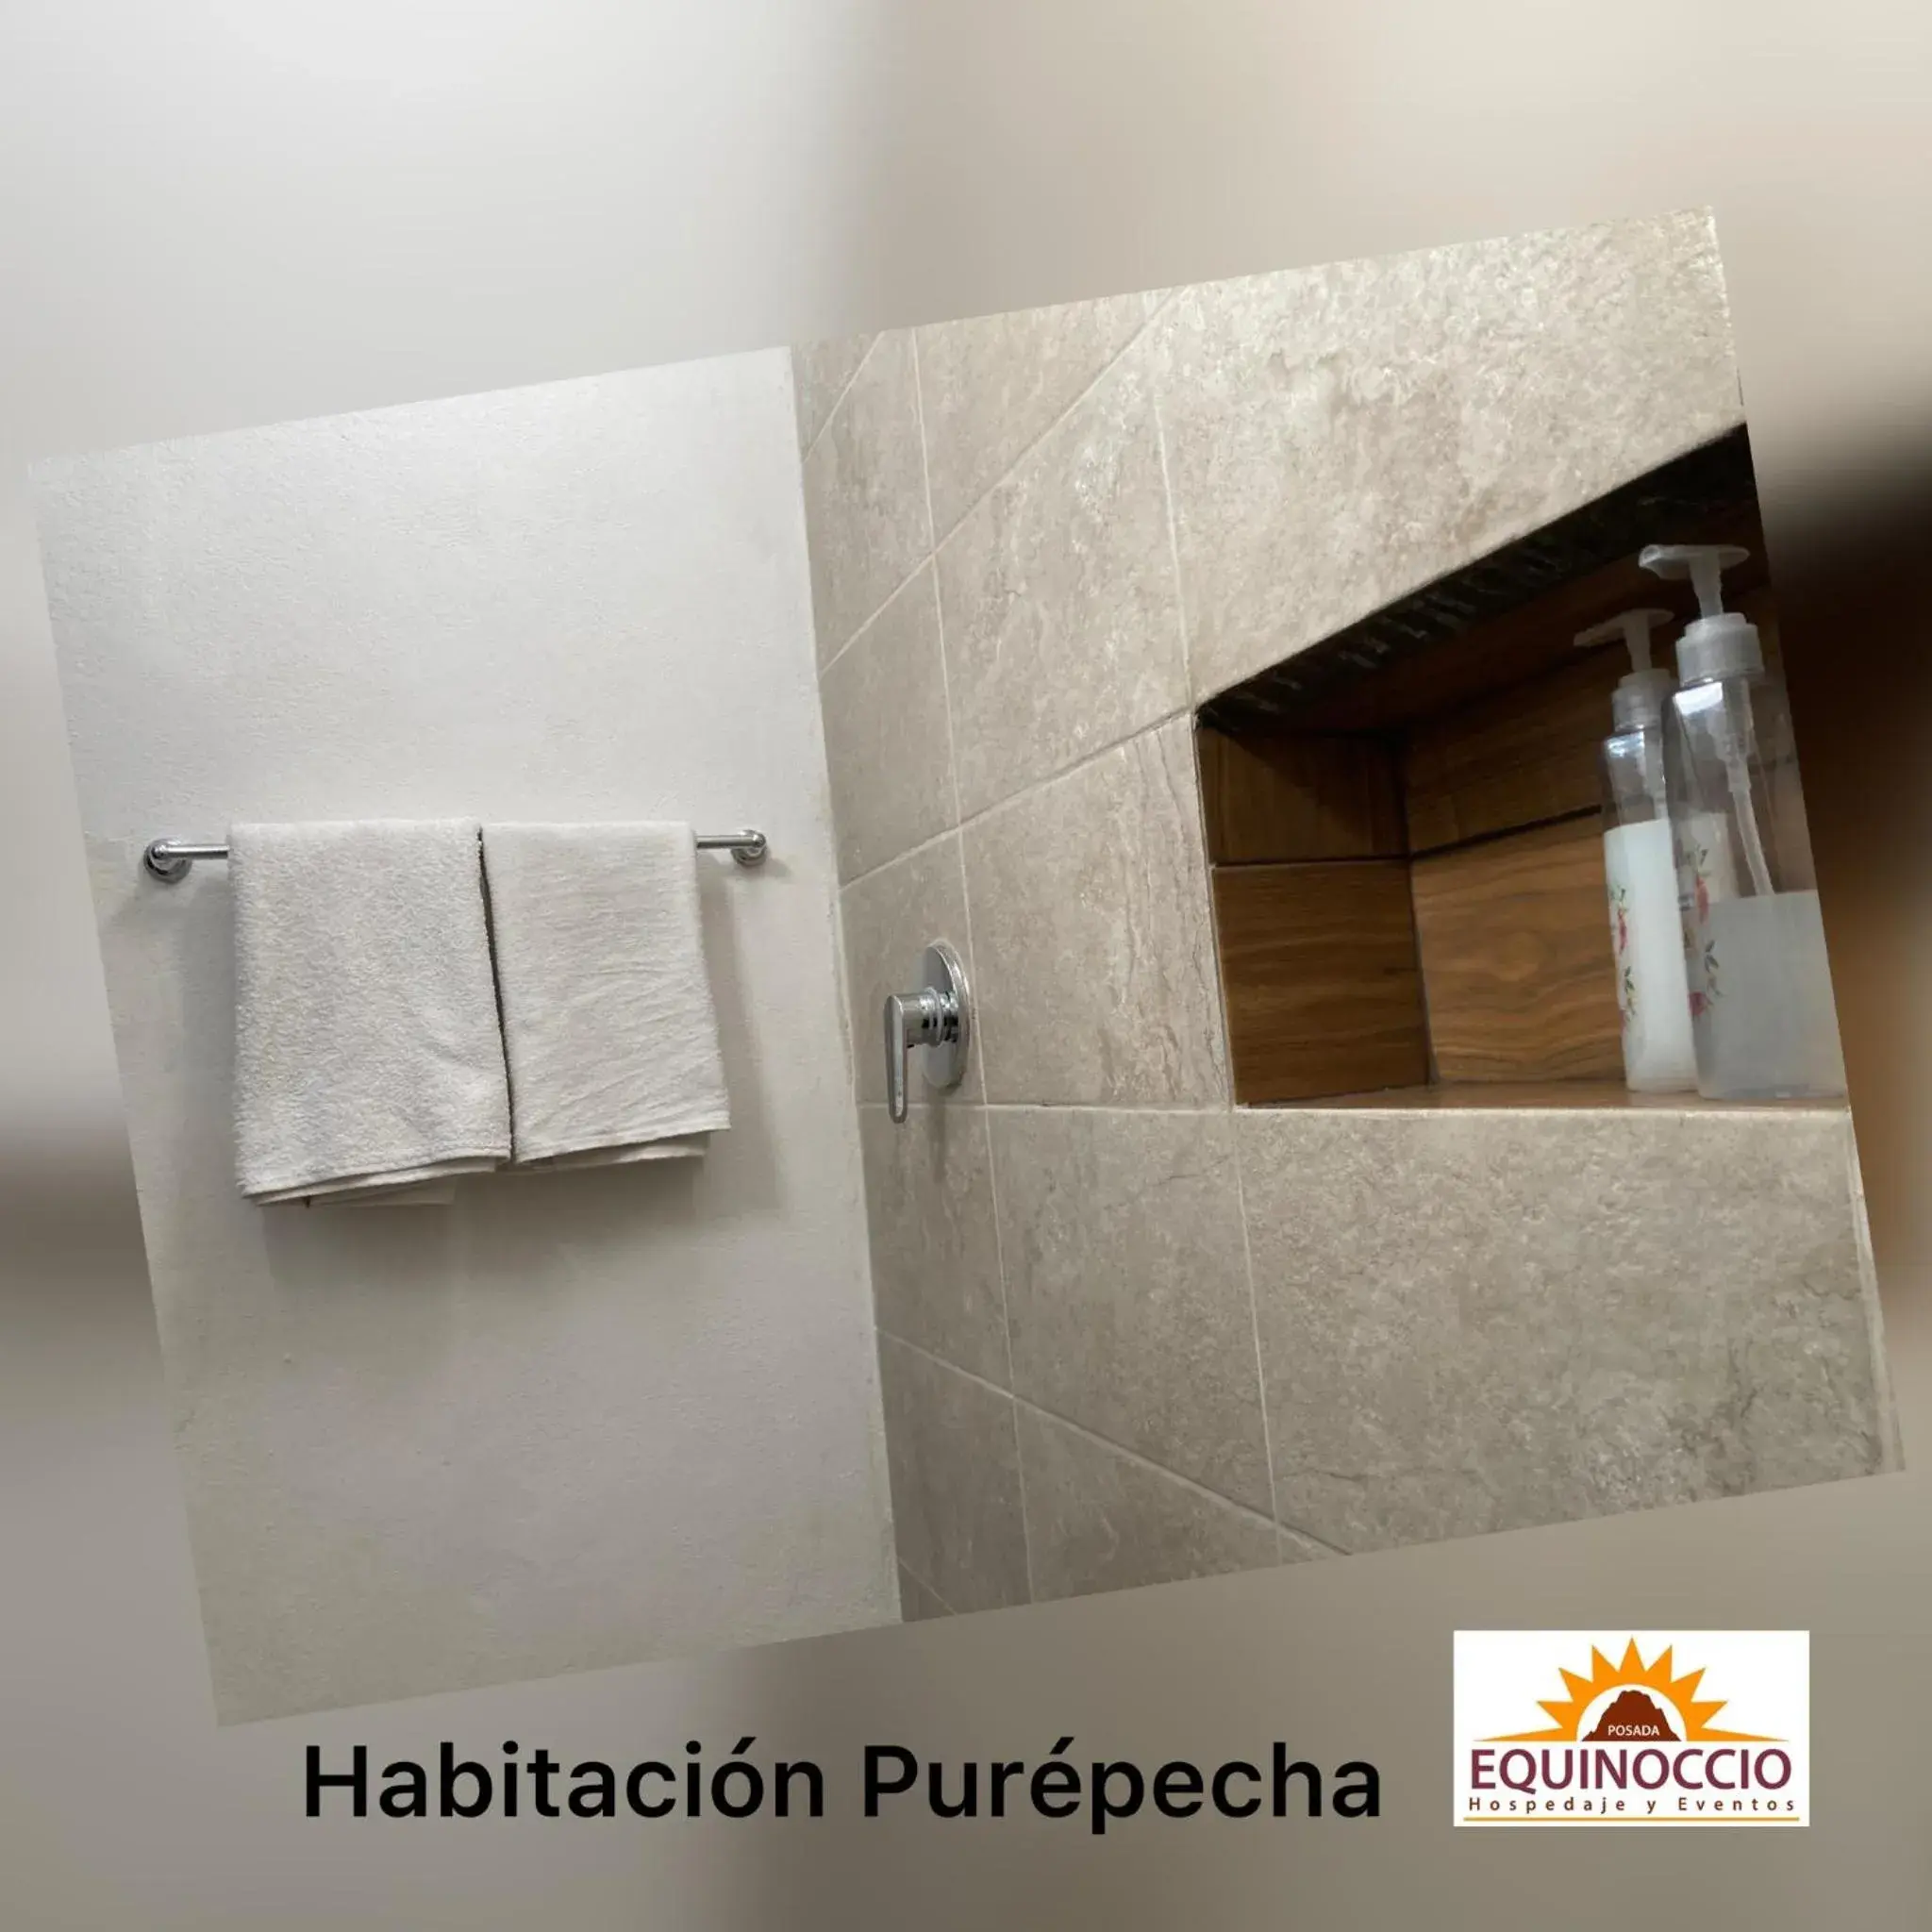 Bathroom in Posada Equinoccio